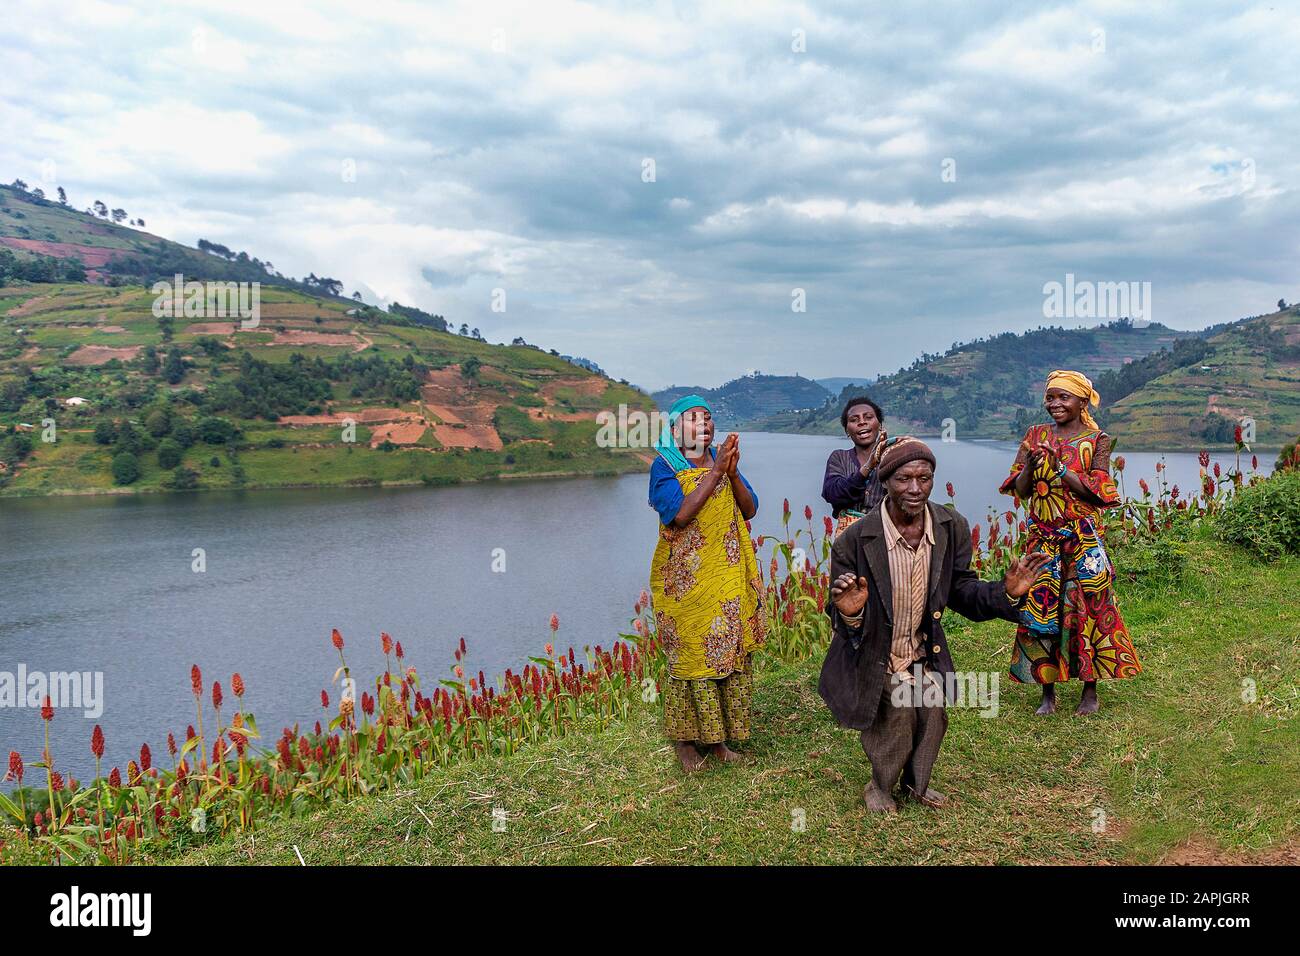 Batwa people known also as Pygmies, dancing and singing, at the Lake Bunyonyi, Uganda Stock Photo